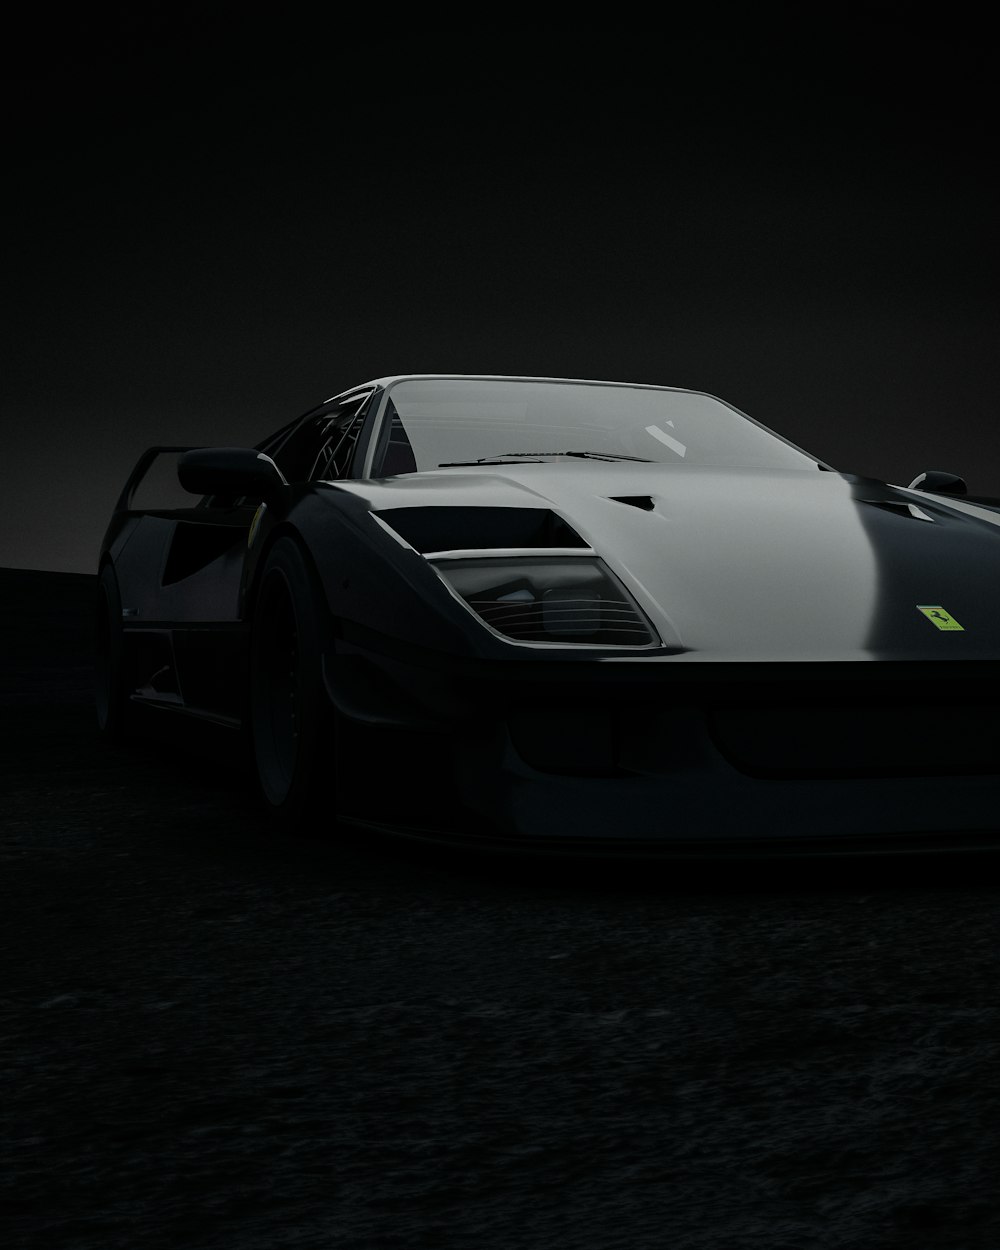 Ein schwarz-weißer Sportwagen im Dunkeln